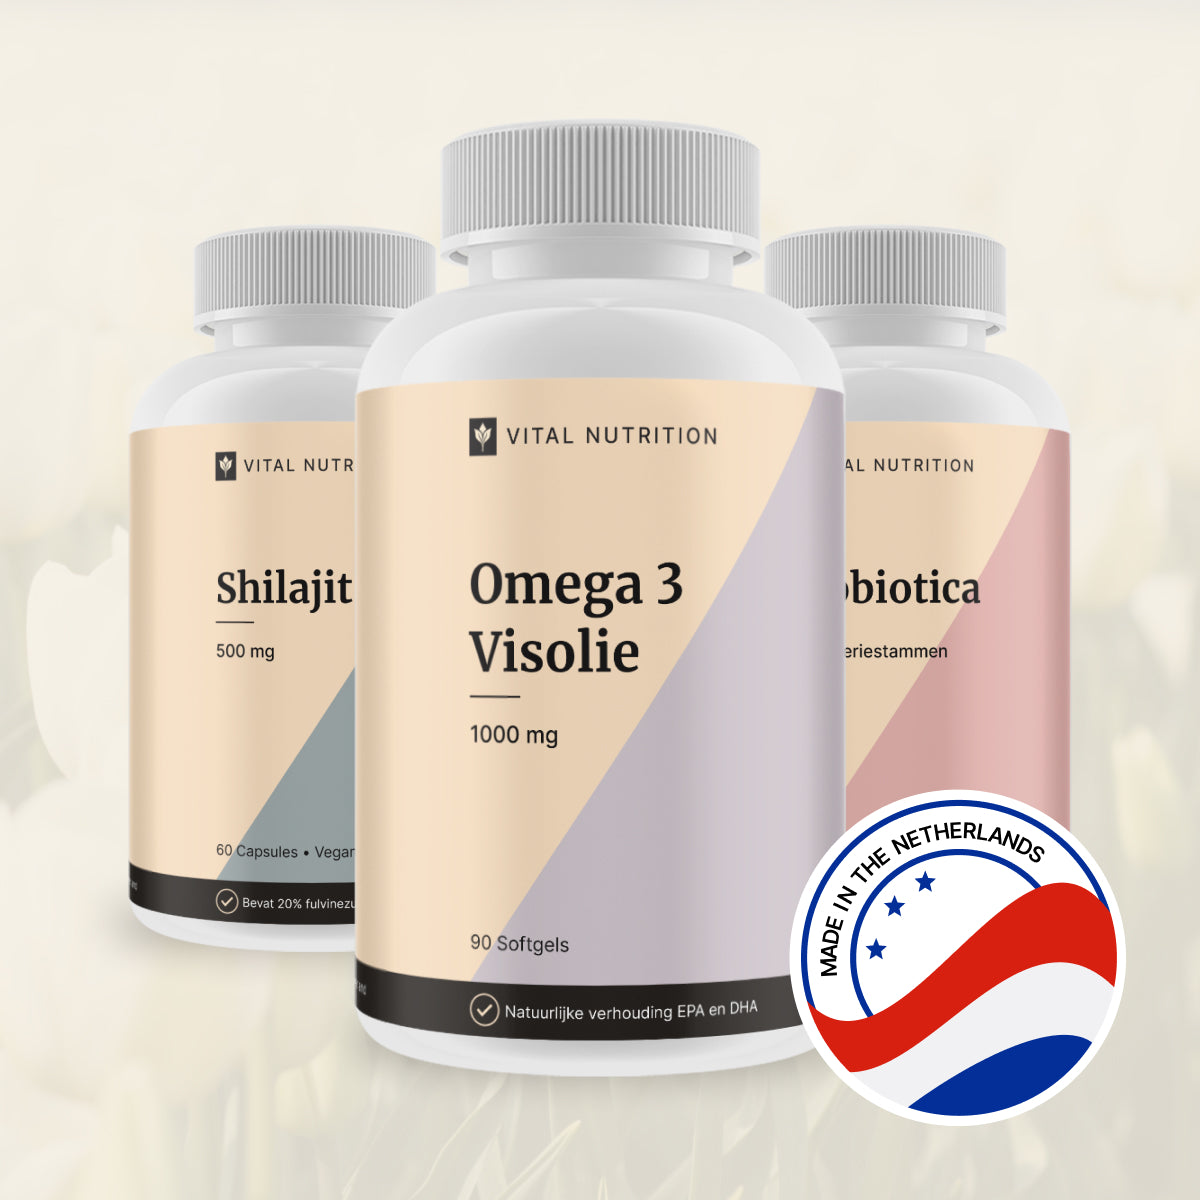 Omega 3 Visolie en 2 andere Vital Nutrition supplementen met productie in Nederland icoon